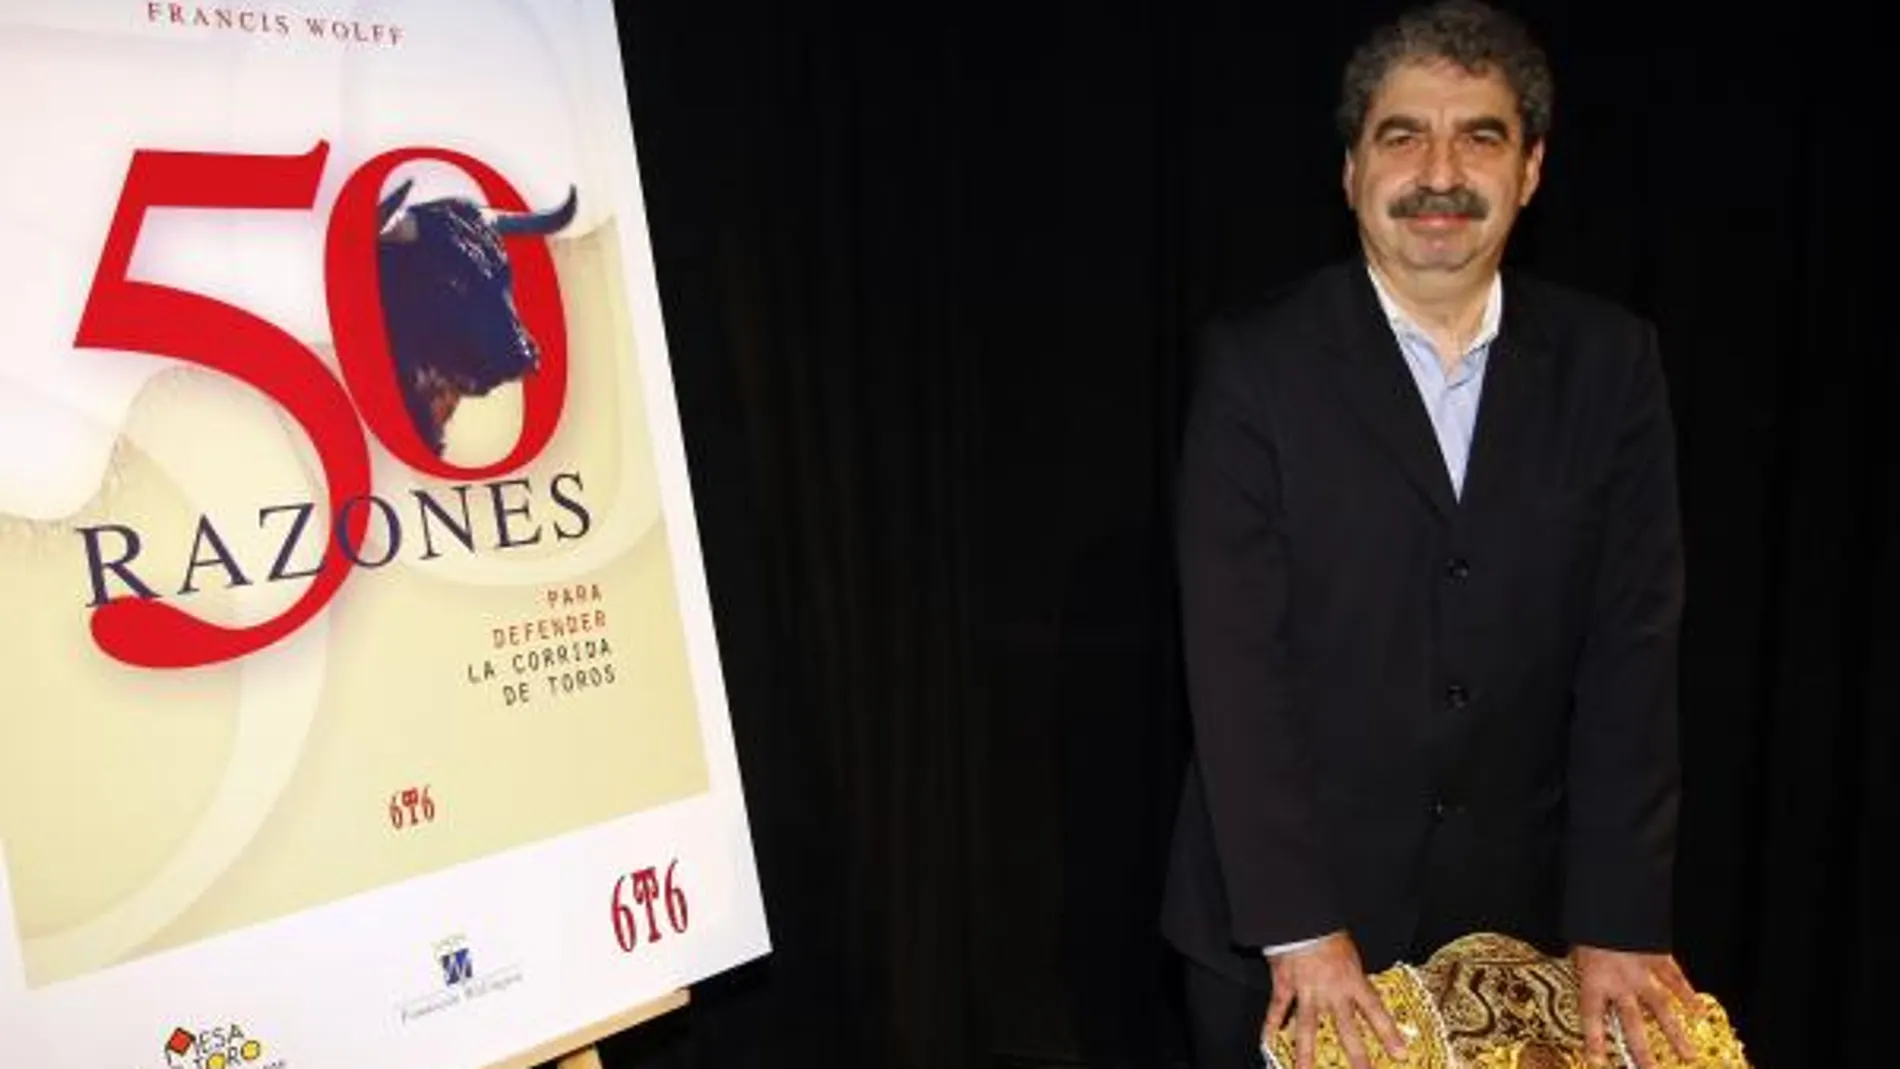 Francis Wolff presentó ayer en Barcelona su libro «50 razones para defender la corrida» en Madrid el pasado 27 de febrero